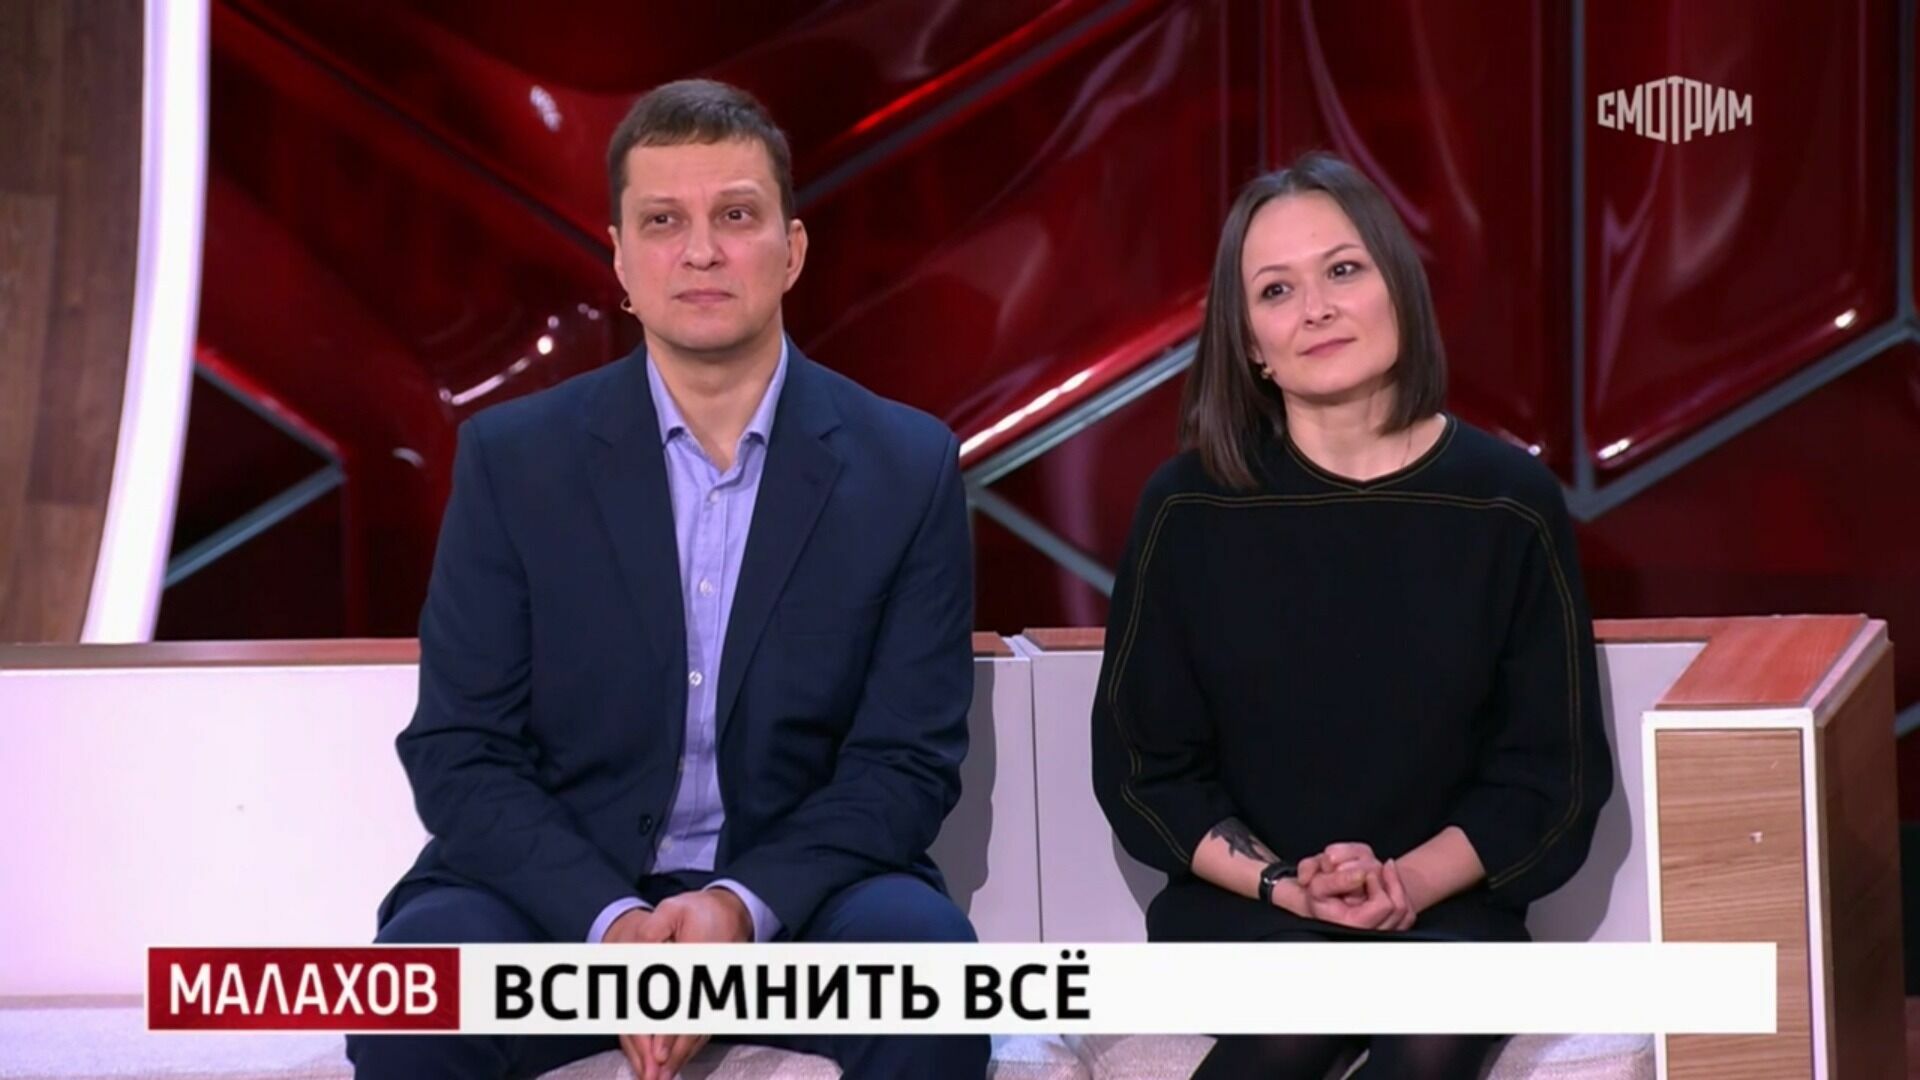 Белгородский врач спас жизнь тяжелораненому солдату и попал на ТВ к Малахову